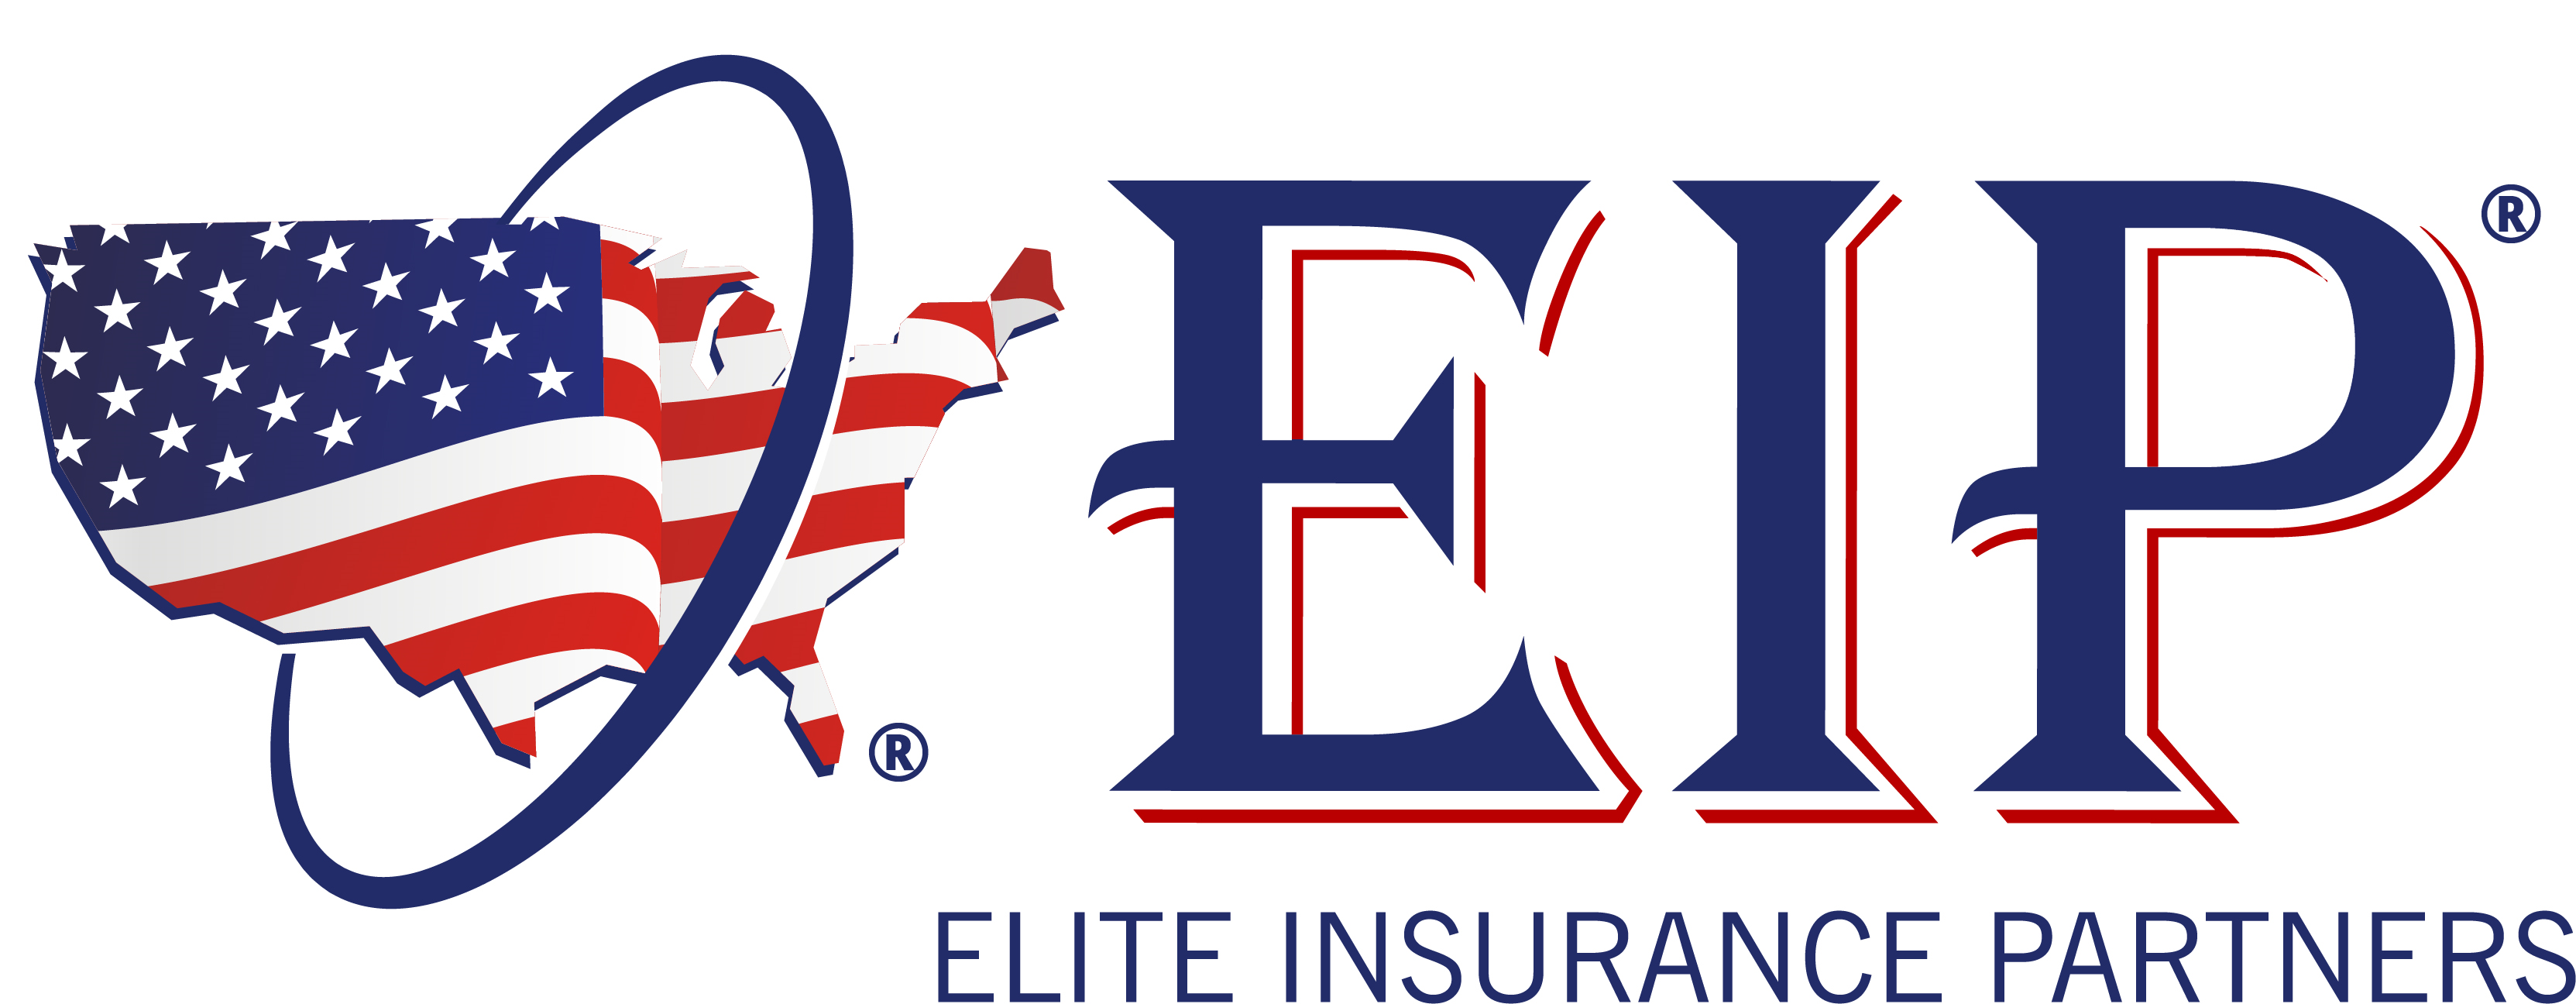 Elite Insurance Partners logo